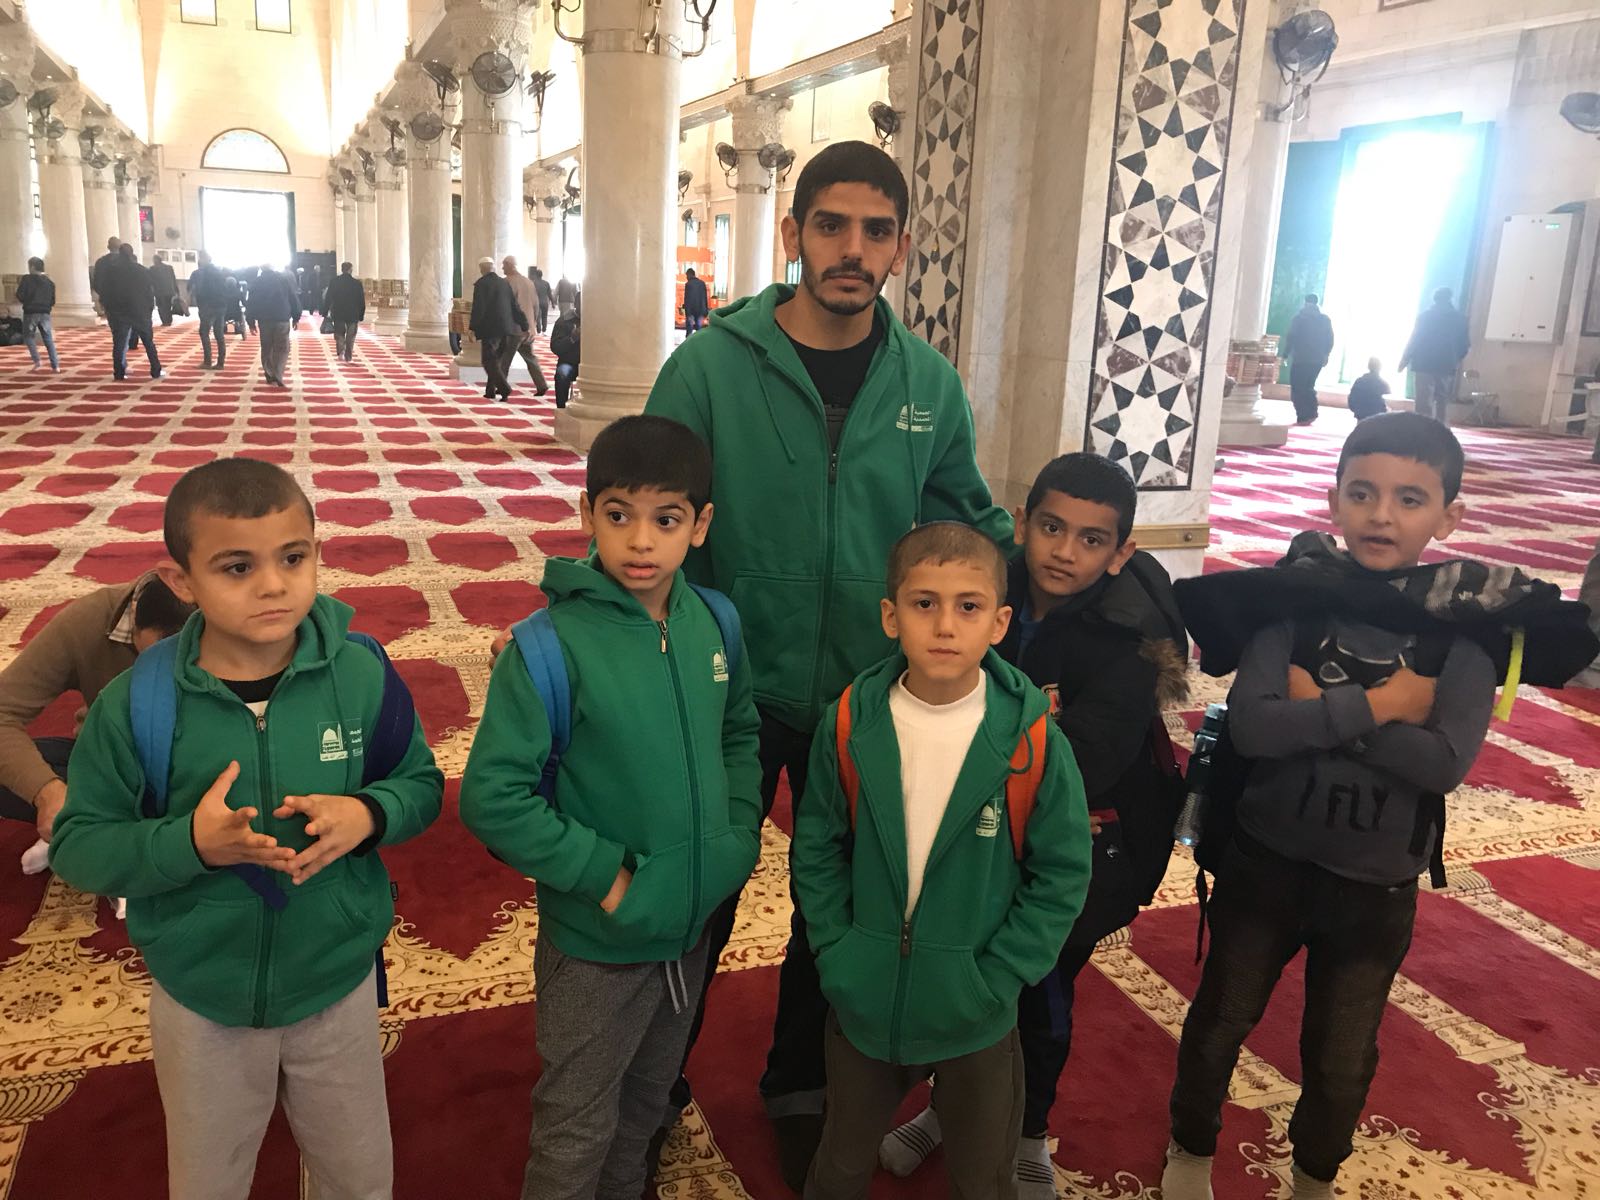 مرشدو عيون_البراق يصطحبون طلاب -مشروع غرس- في جولة إرشادية شيّقة في المسجد الأقصى